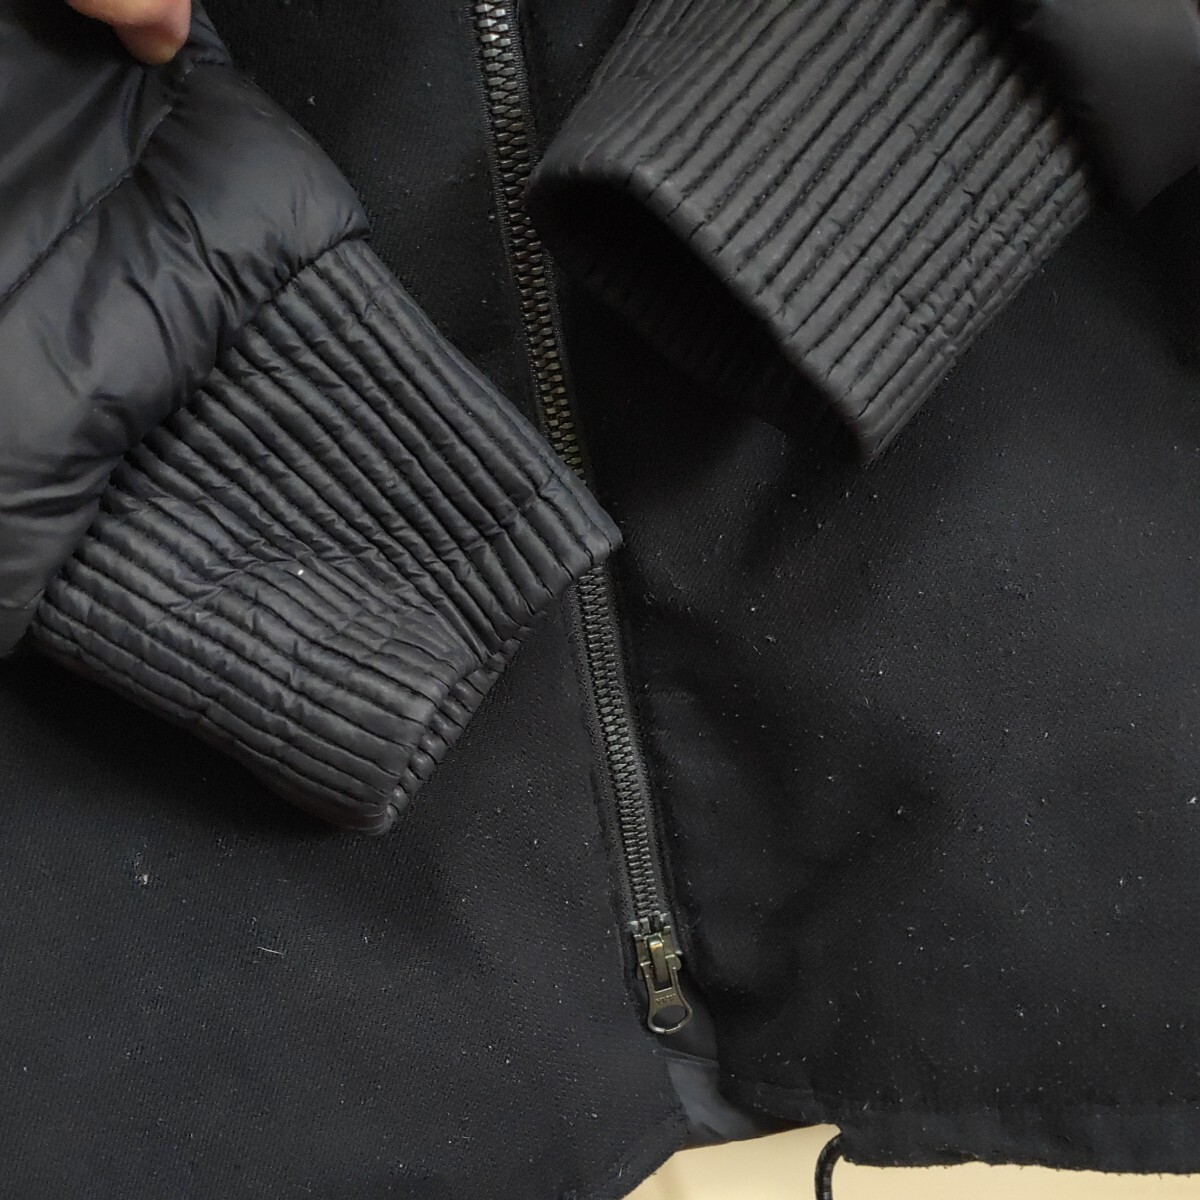  Colombia длинное пальто внешний жакет черный чёрный columbia уличный кемпинг унисекс S размер 0509-B1-SA7